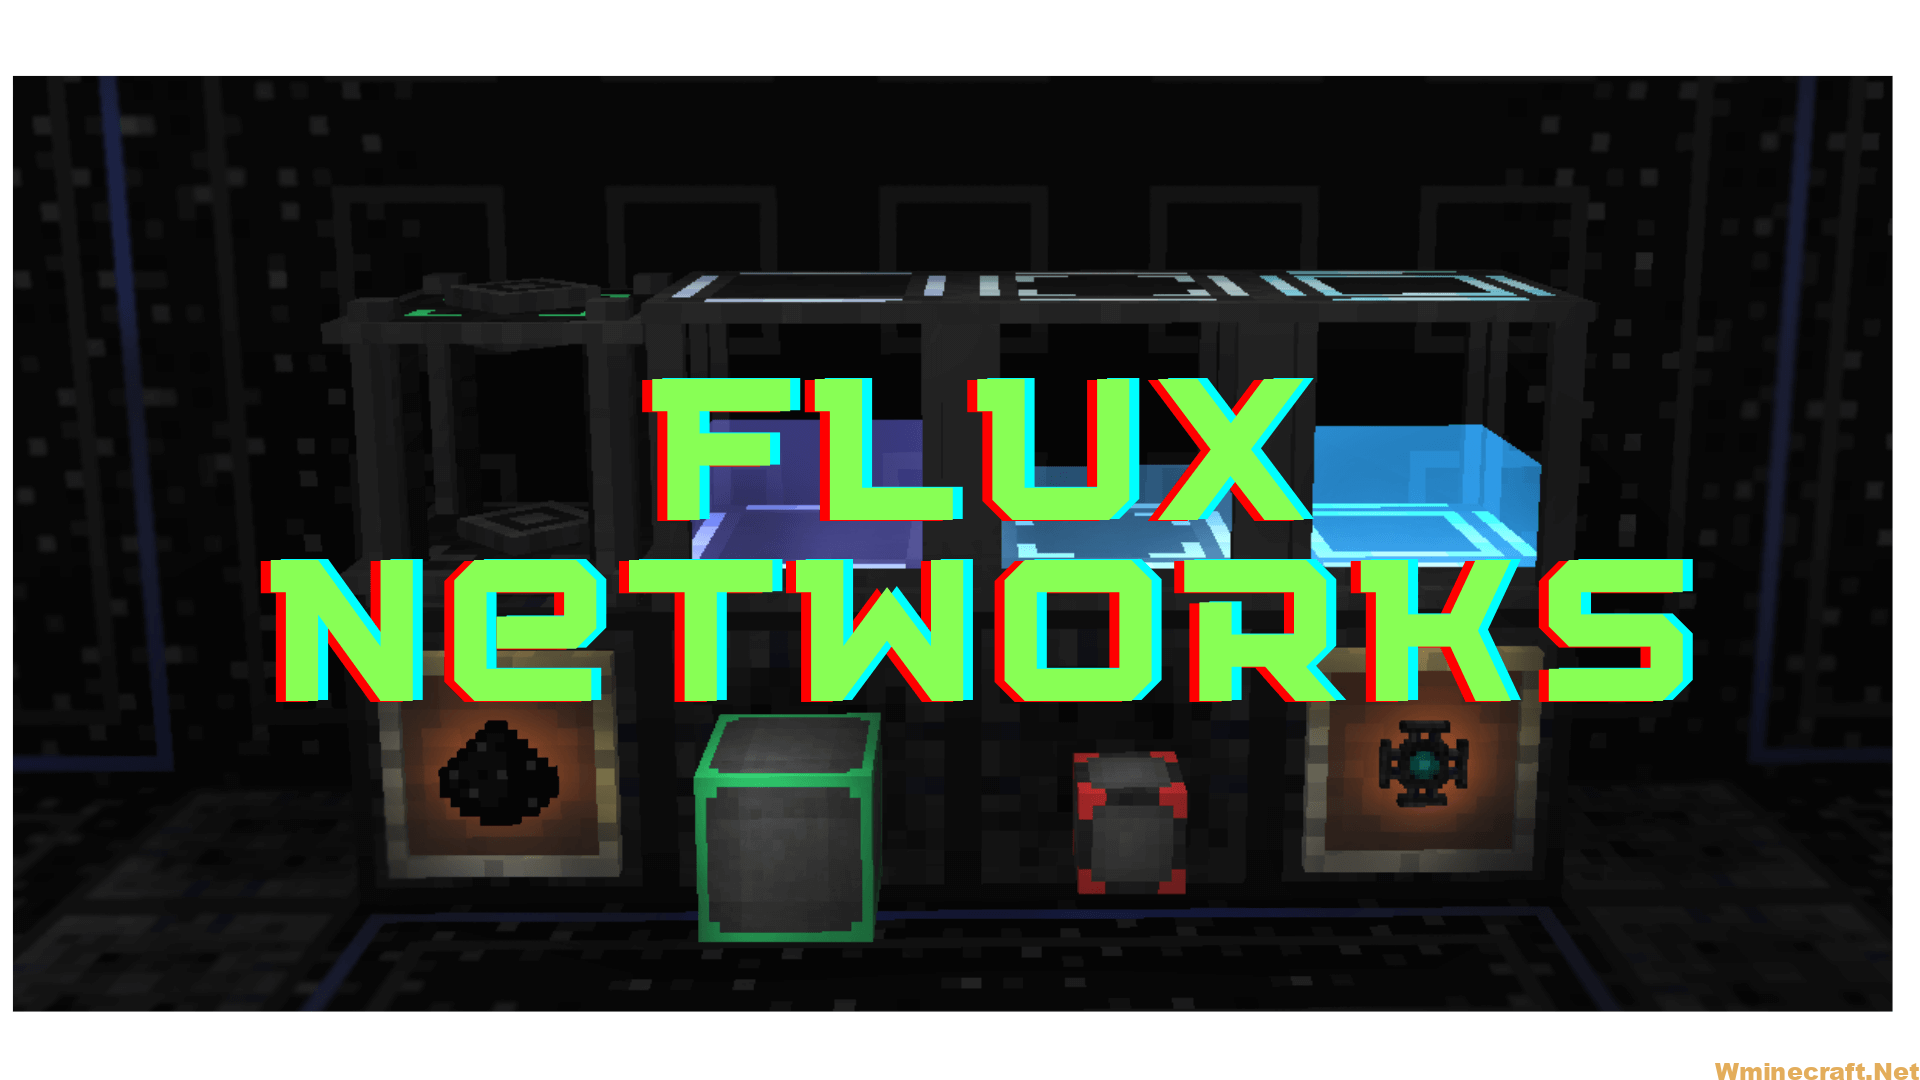 flux networks